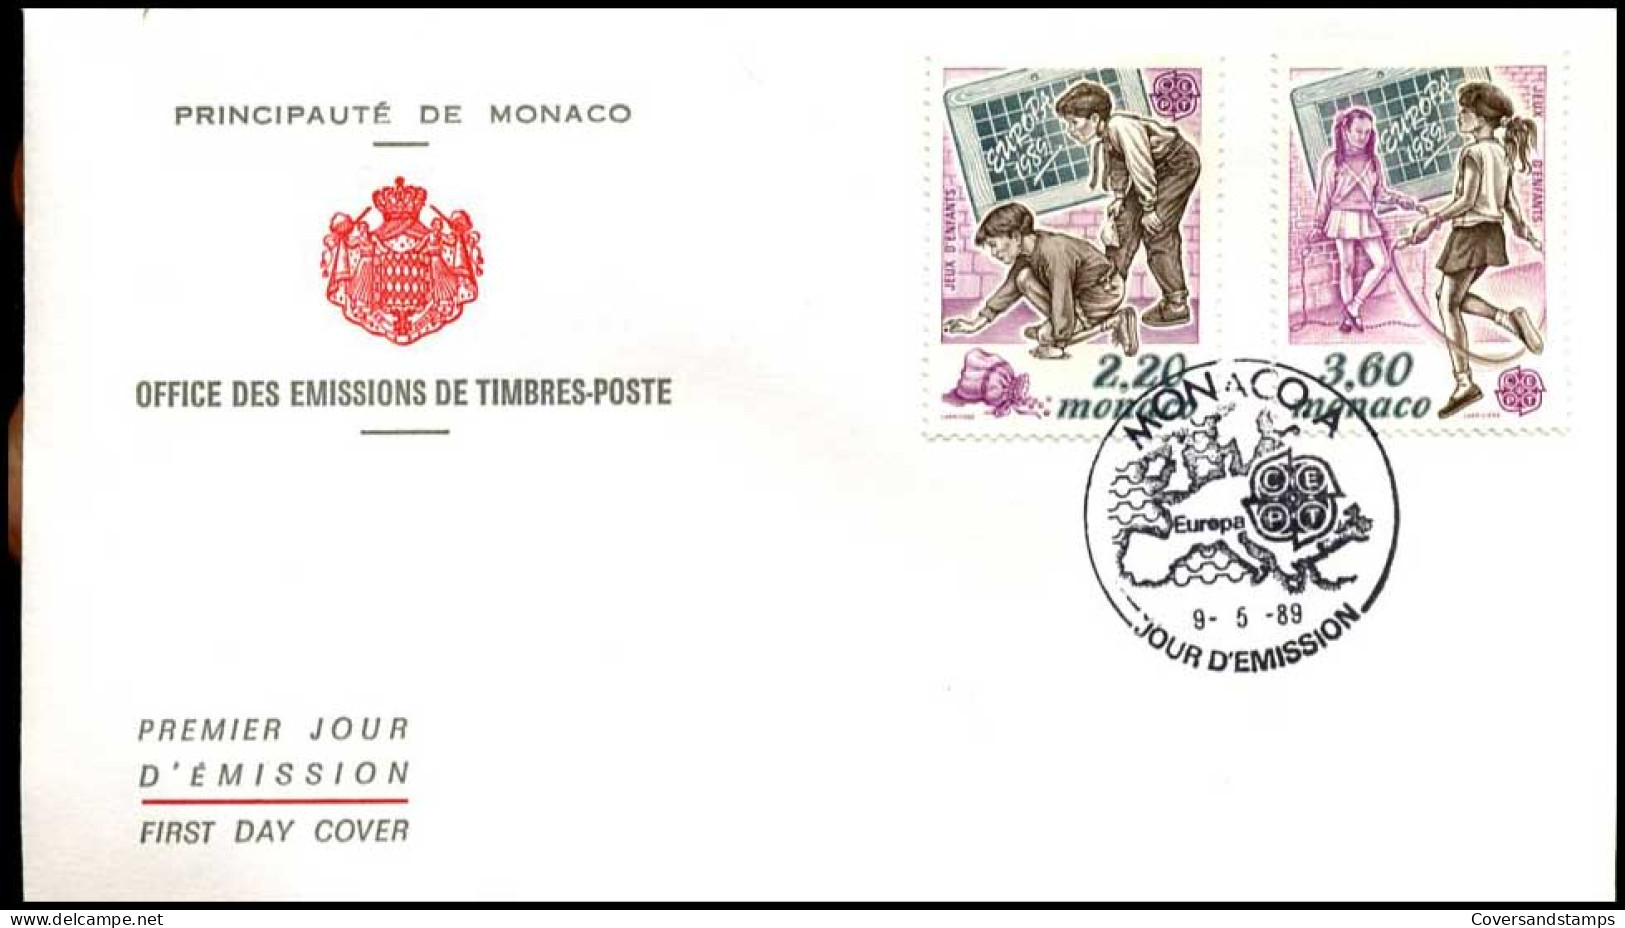  Monaco - FDC - Europa CEPT 1989 - 1989